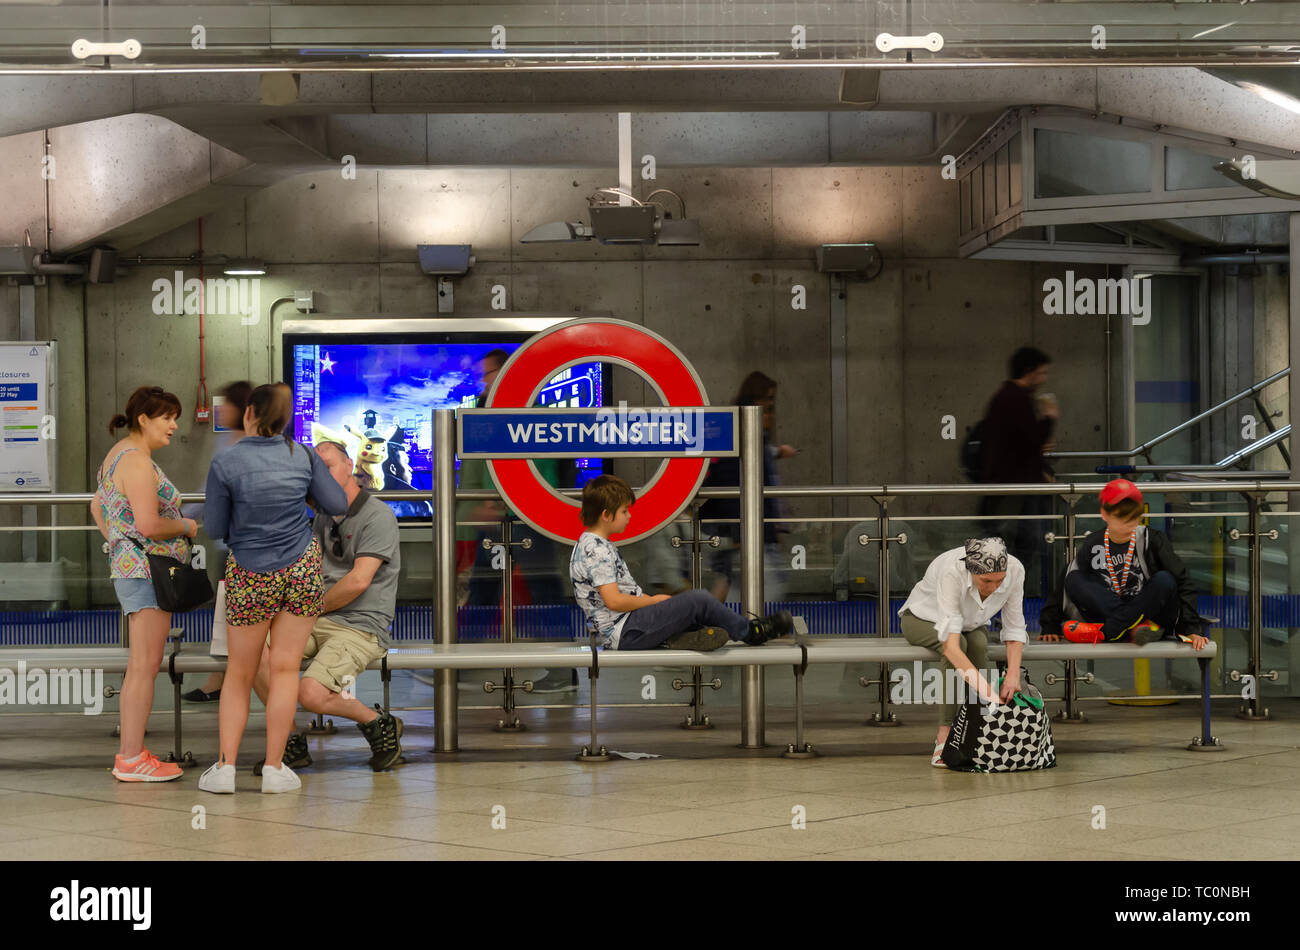 Les gens s'asseoir sur un banc sur la plate-forme à la station de métro Westminster Banque D'Images